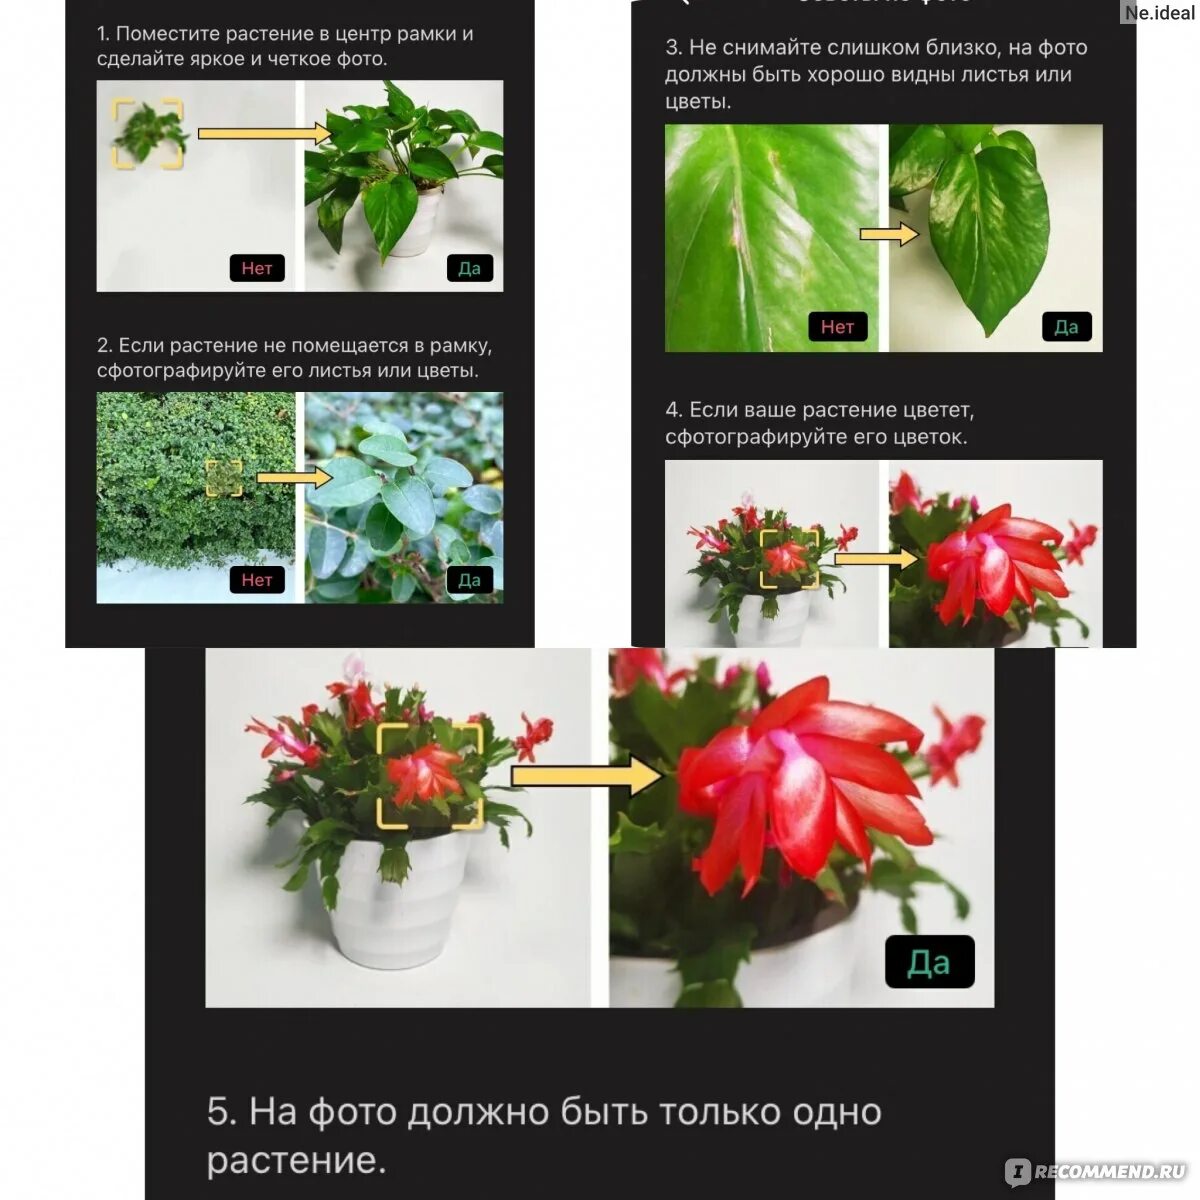 Распознавание растения по фото